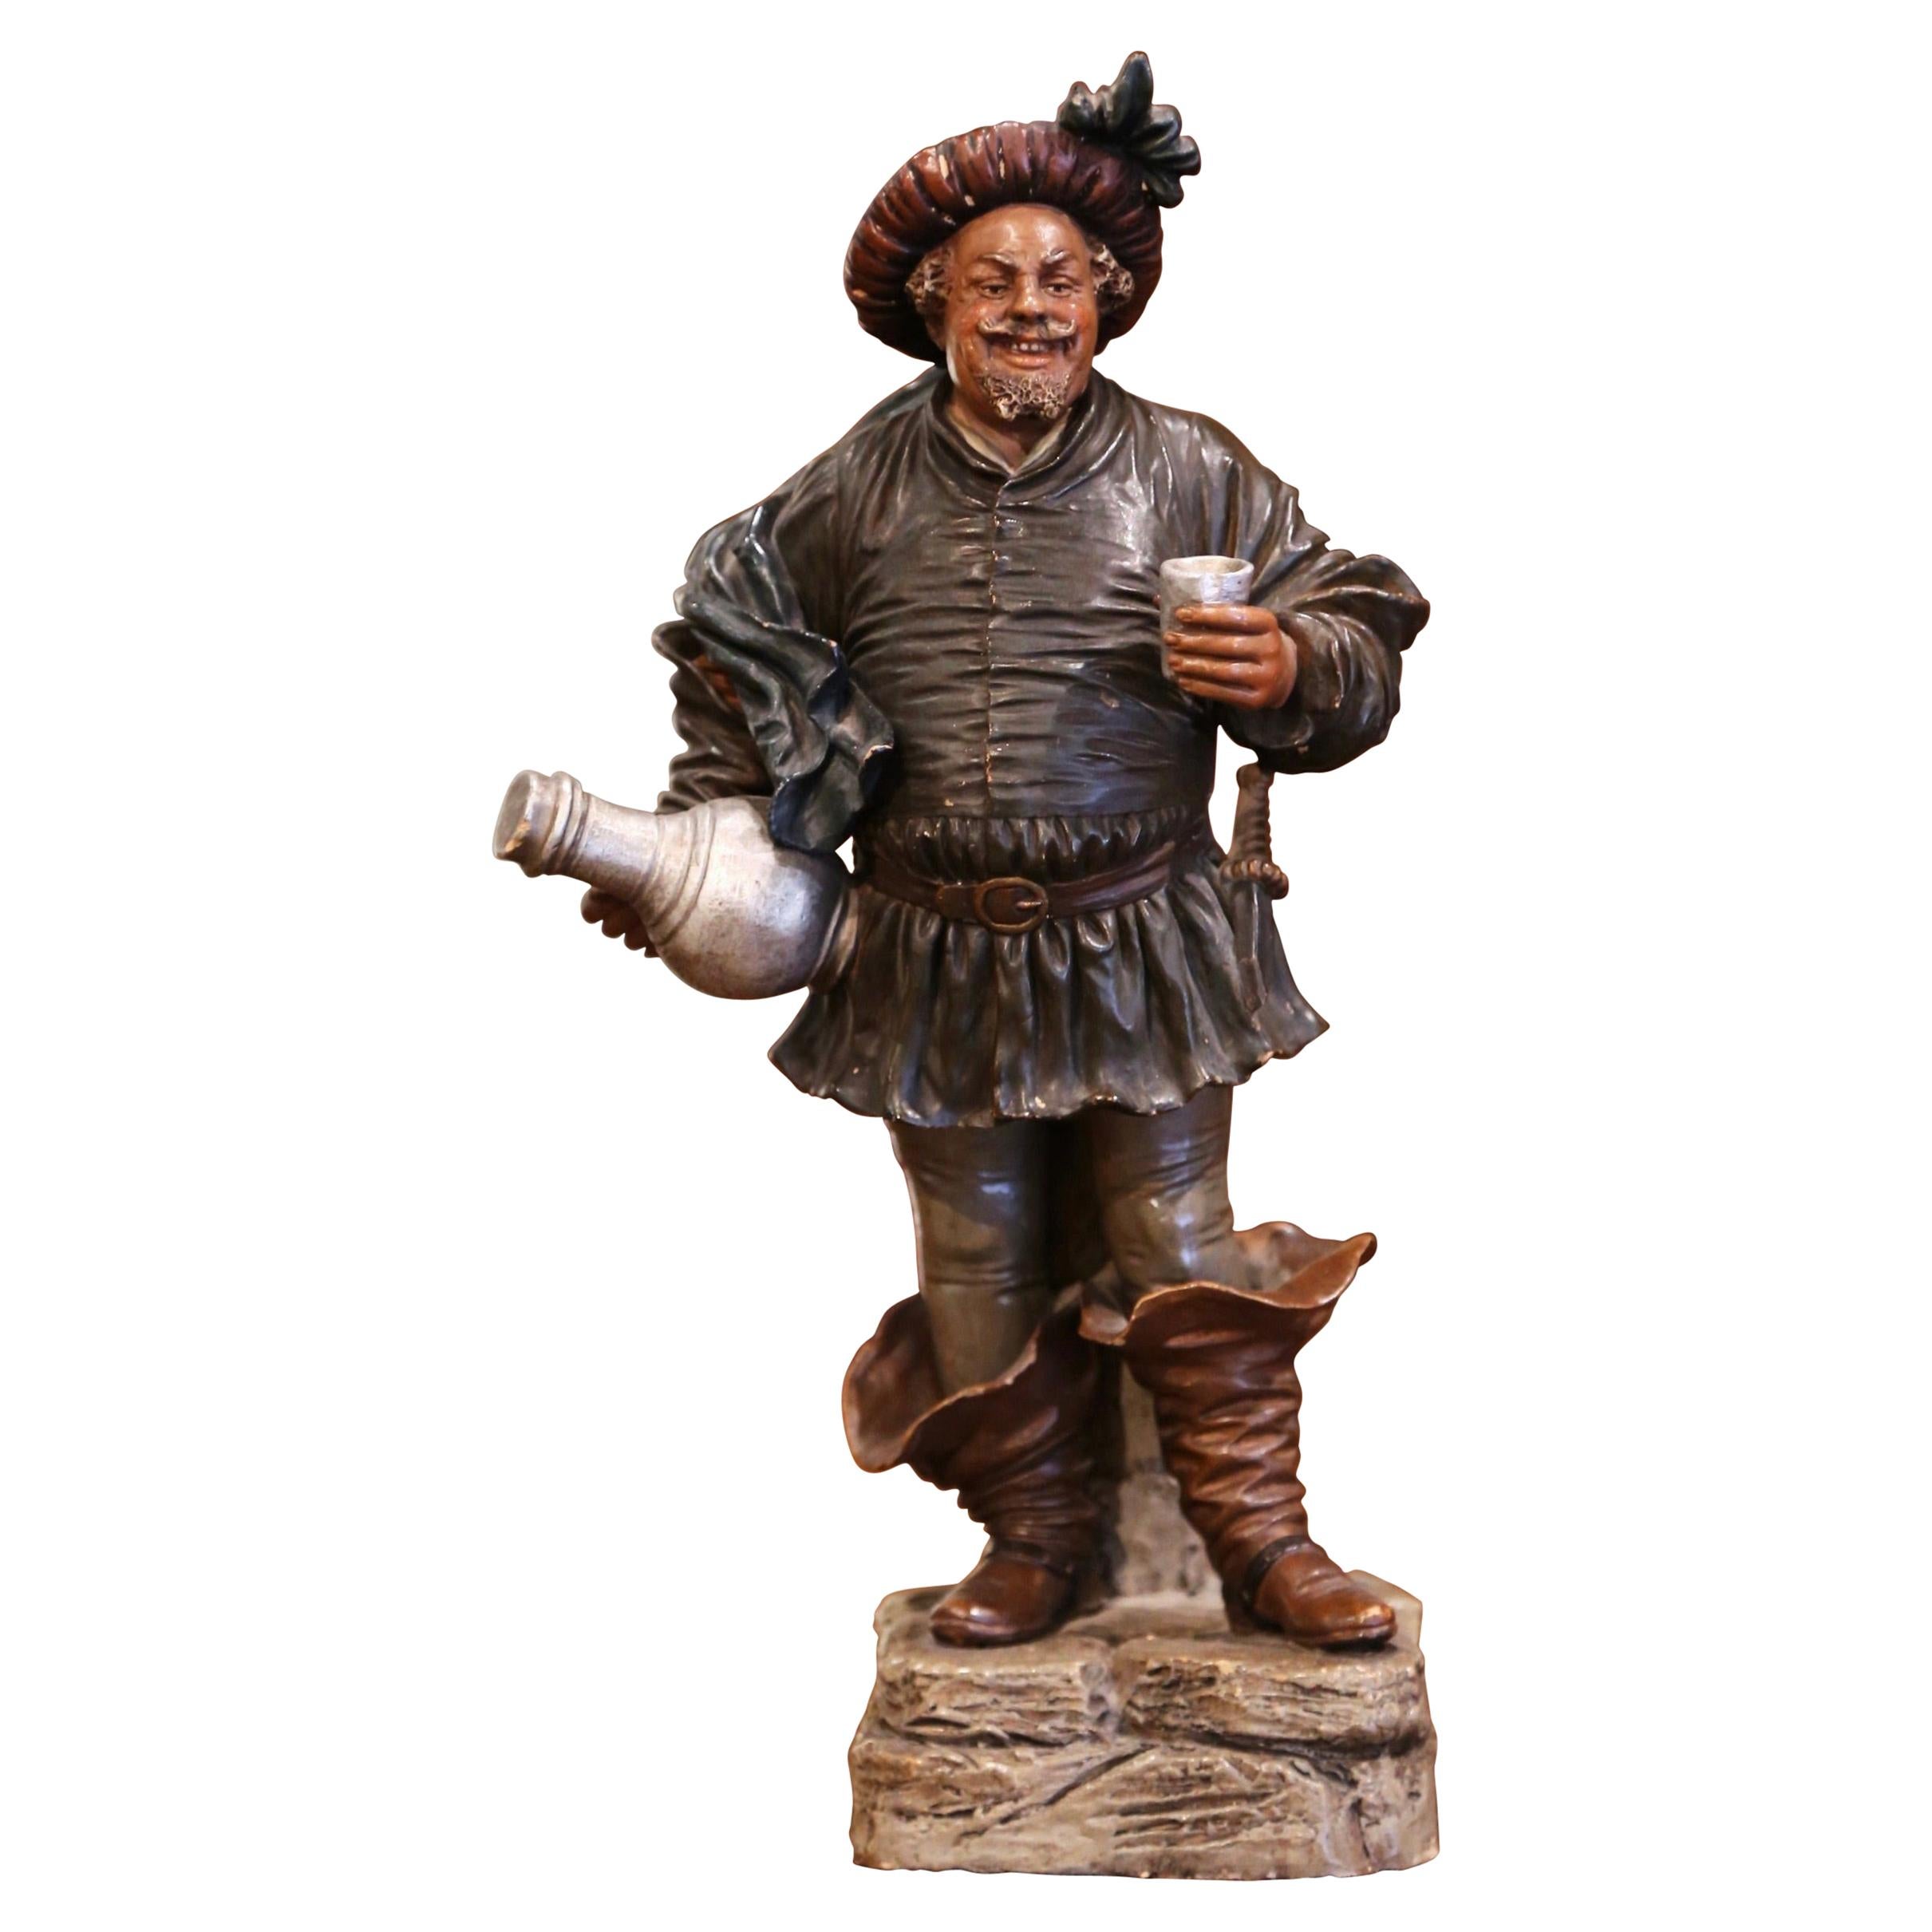 Figurine de bouffon de bière Musketeer en terre cuite polychrome du 19ème siècle français